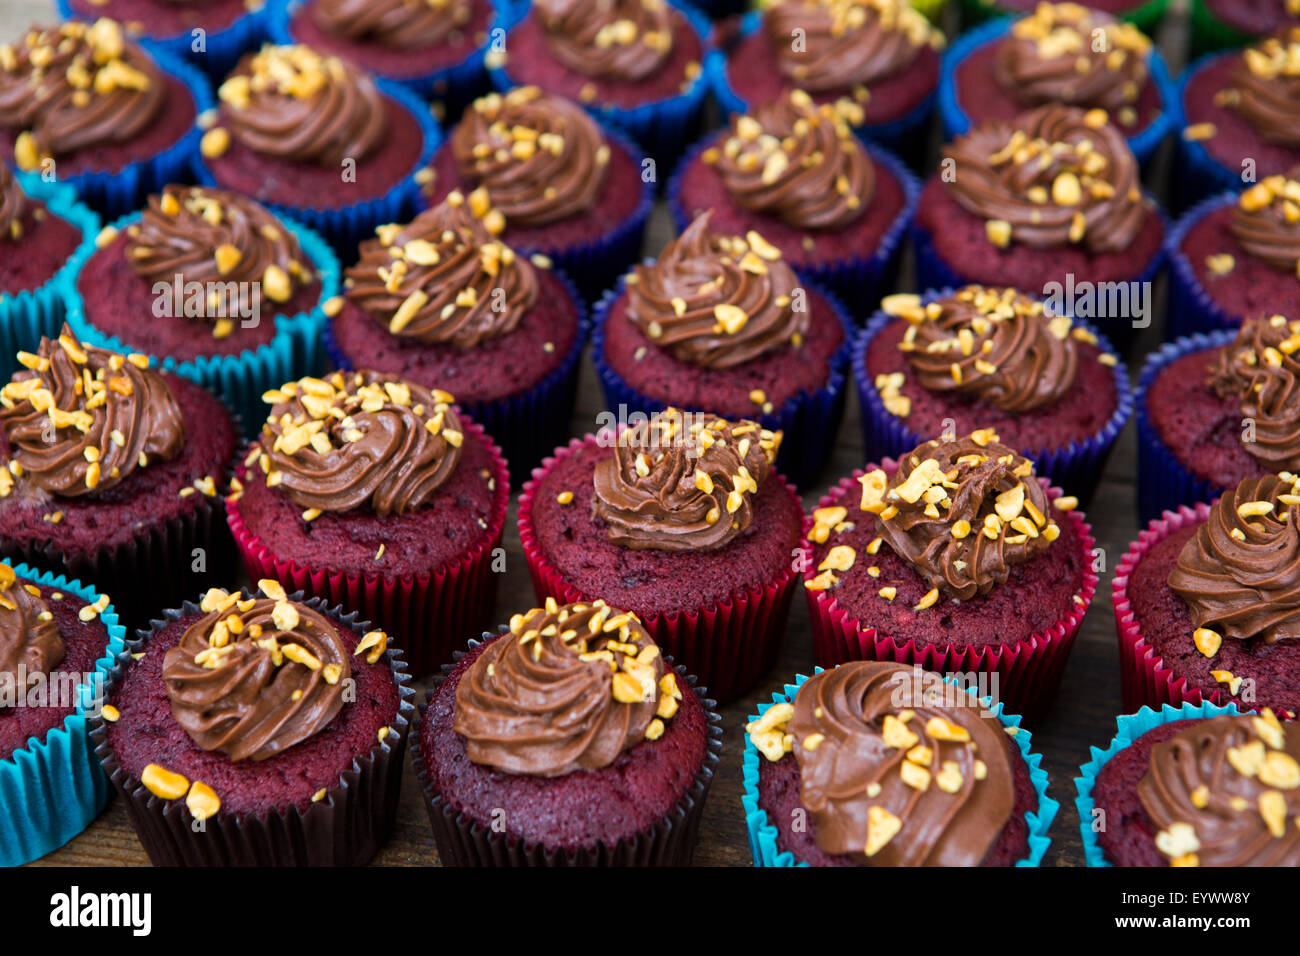 Red Velvet Cupcakes mit Schokolade Garnache und Nuss-Topping. Stockfoto